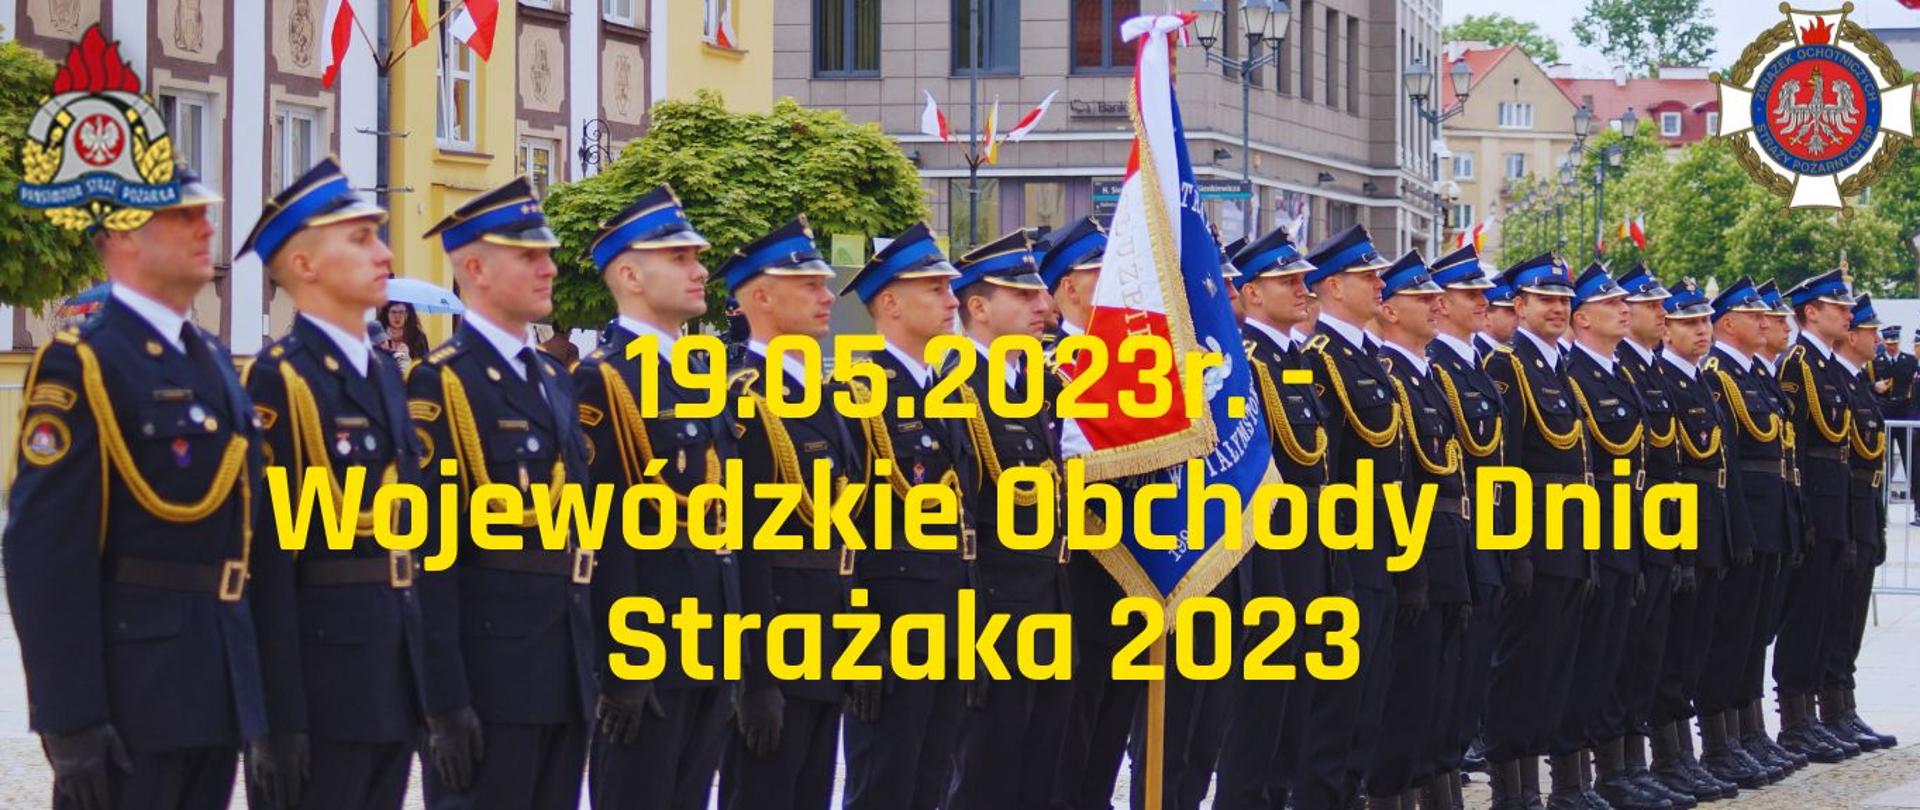 Wojewódzkie Obchody Dnia Strażaka 2023